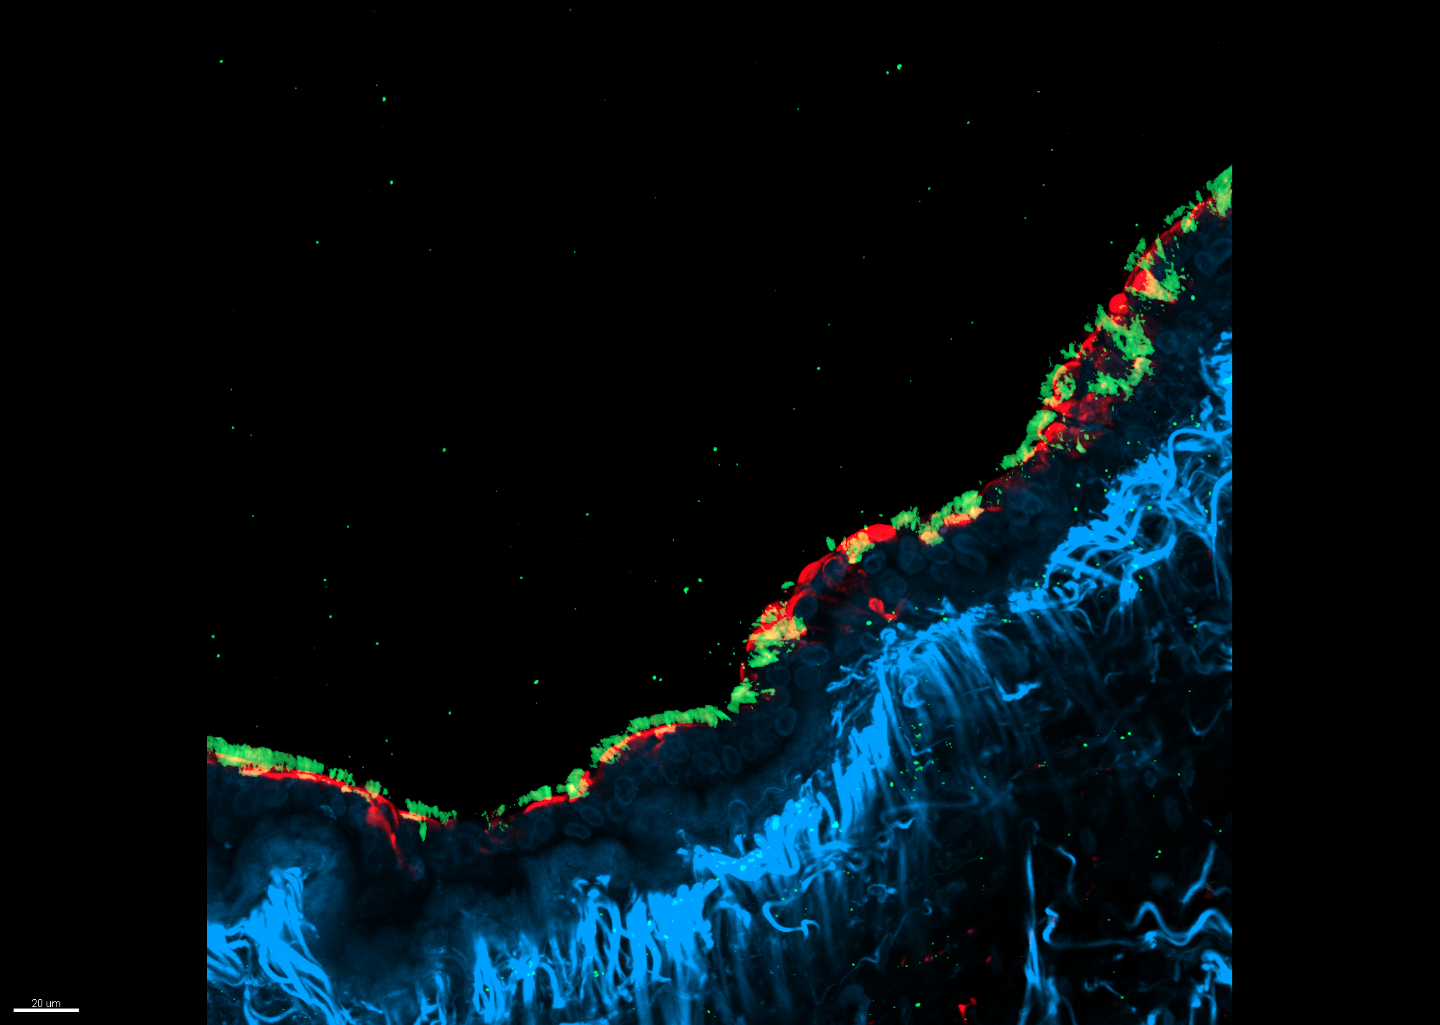 Die Wirksamkeit der RNAi-Wirkstoffkandidaten wurde in vitro erfolgreich an menschlichen Präzisionslungenschnitten getestet, die mit Parainfluenza-Viren (rot) infiziert waren. Die Zellkerne sind in Blau und Zilien in Grün dargestellt.